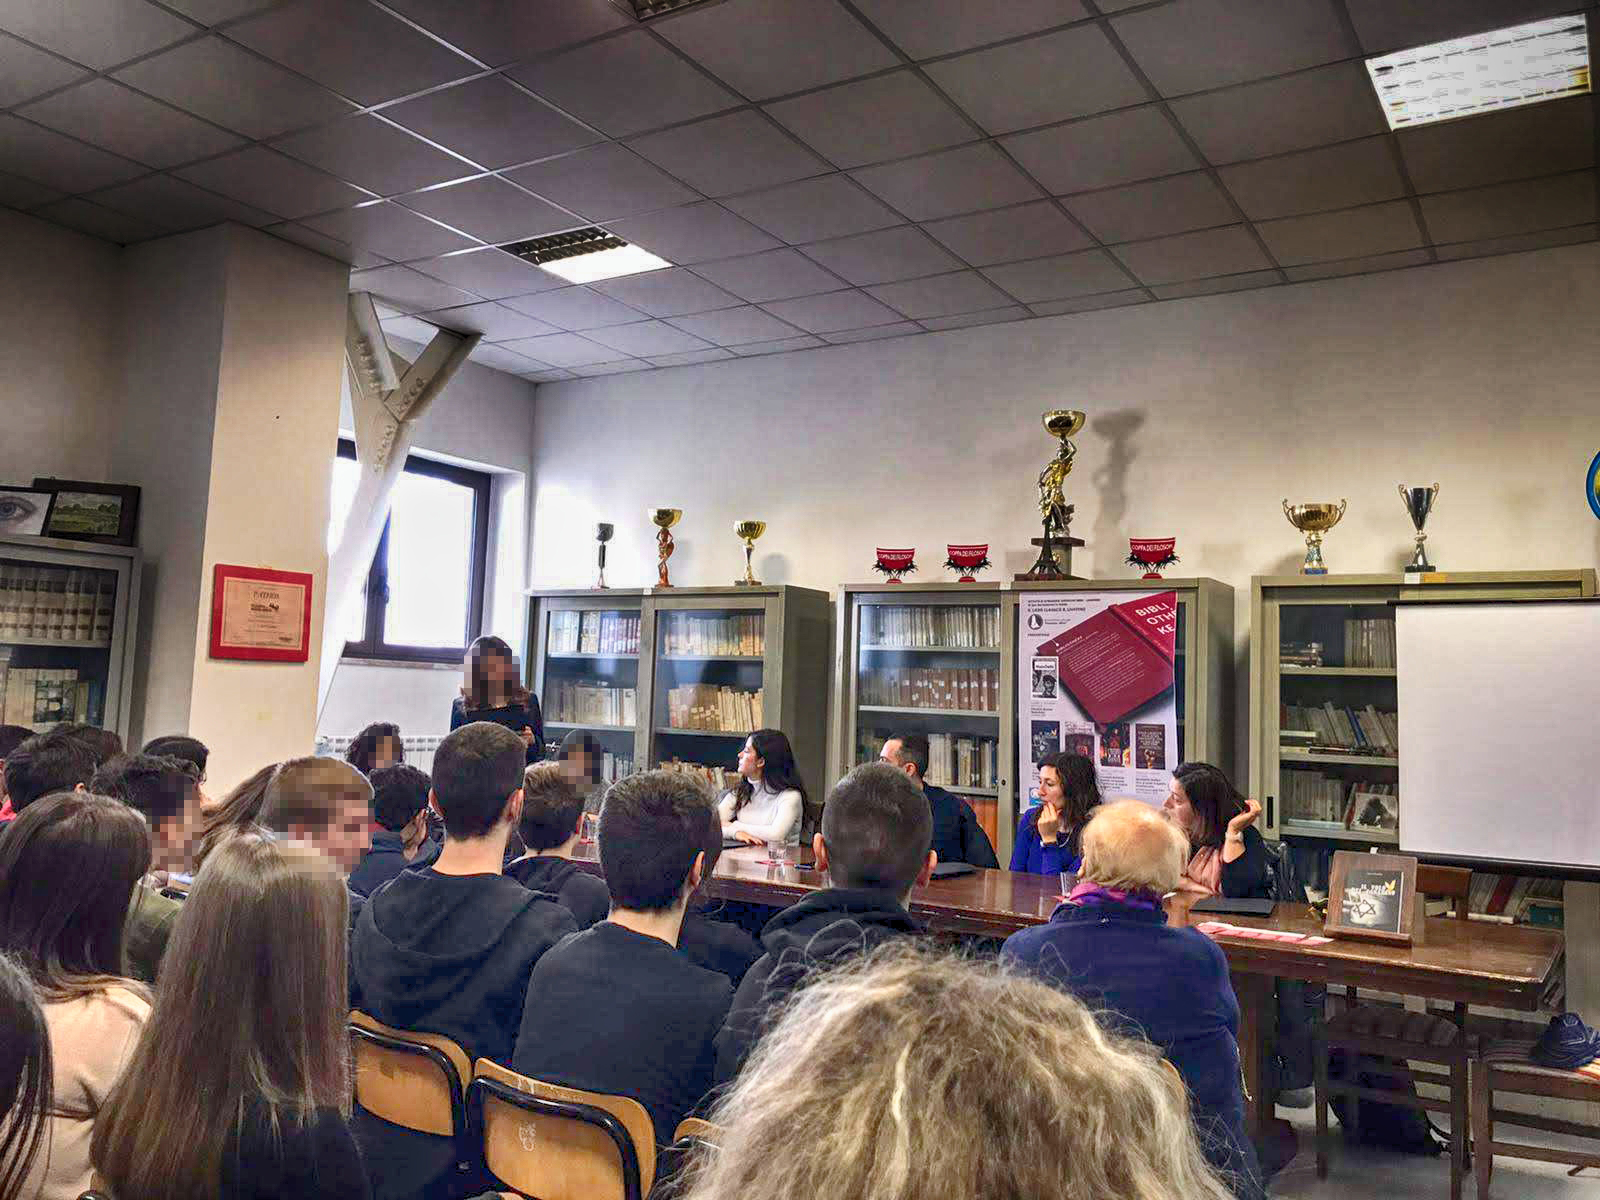 Liceo Classico S. Marco dei Cavoti (BN), 24 novembre 2019